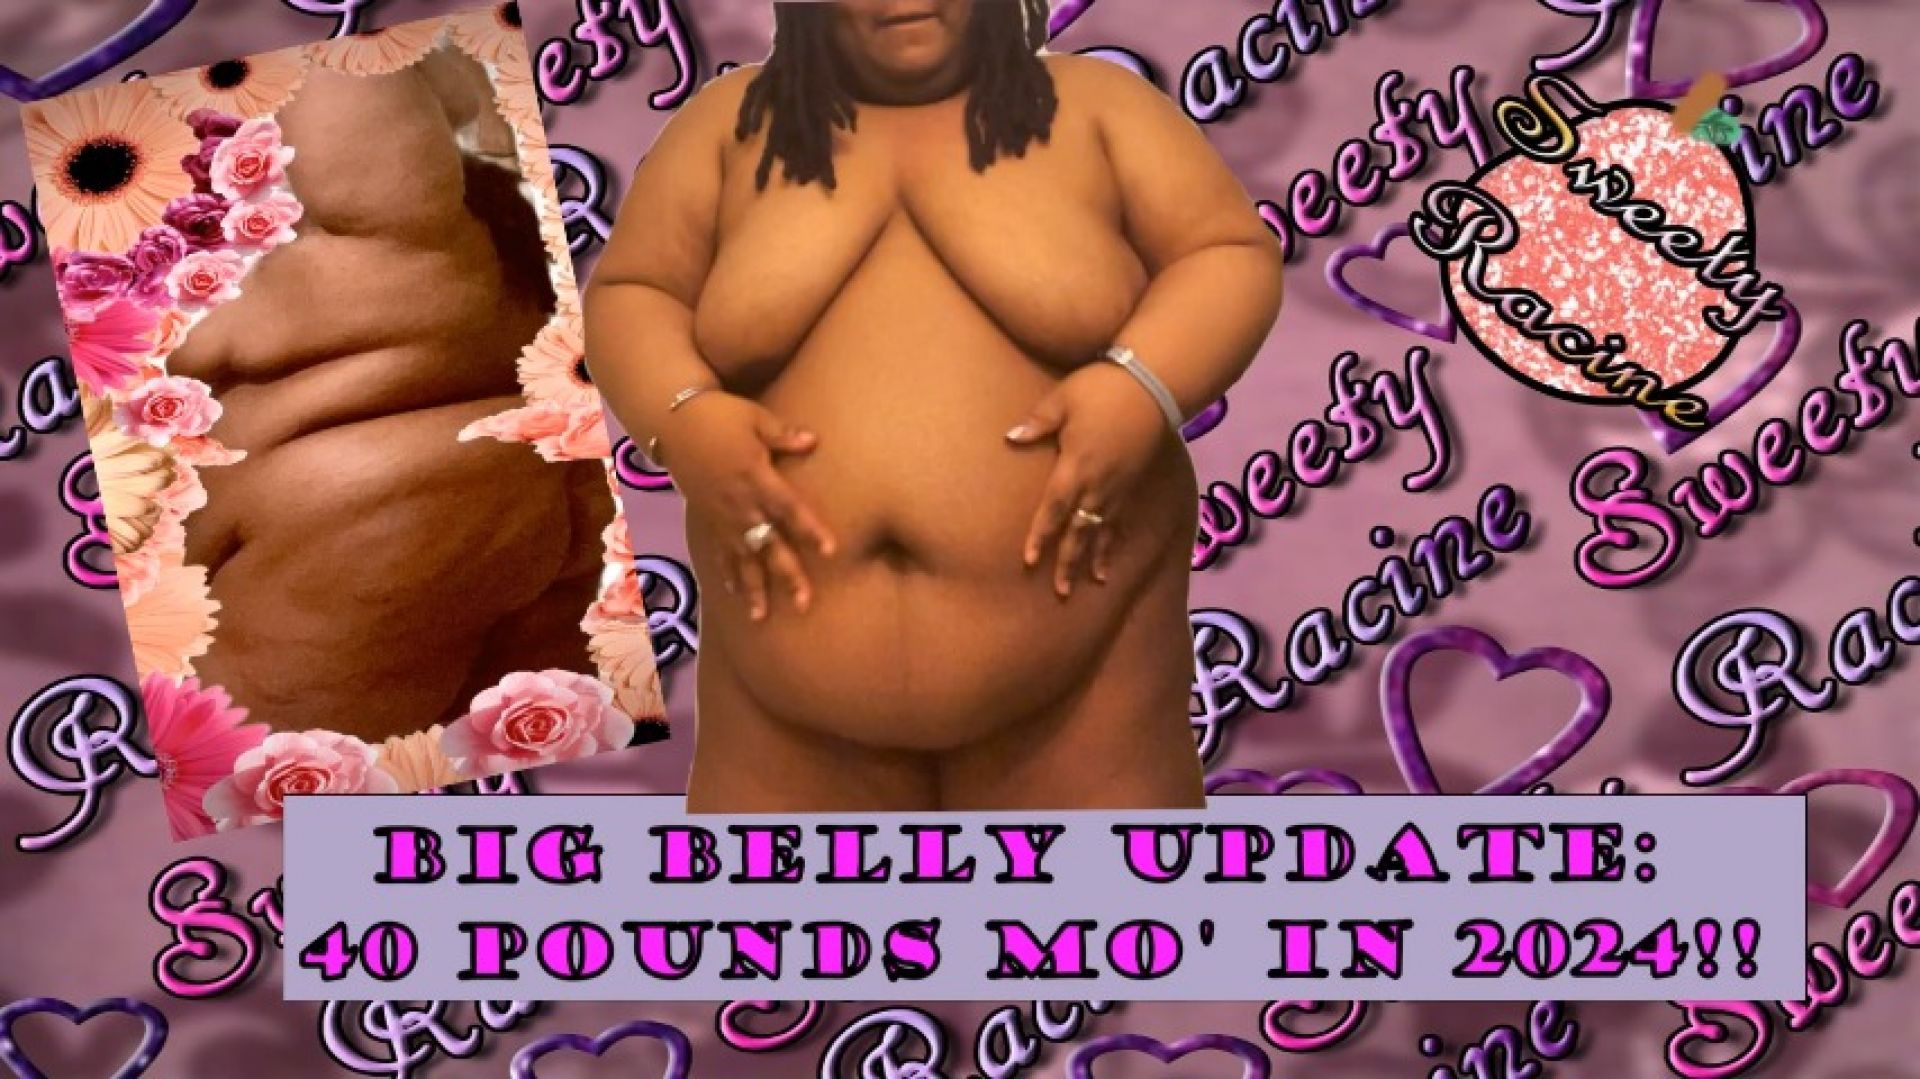 Ebony SSBBW Shows Off Big Belly